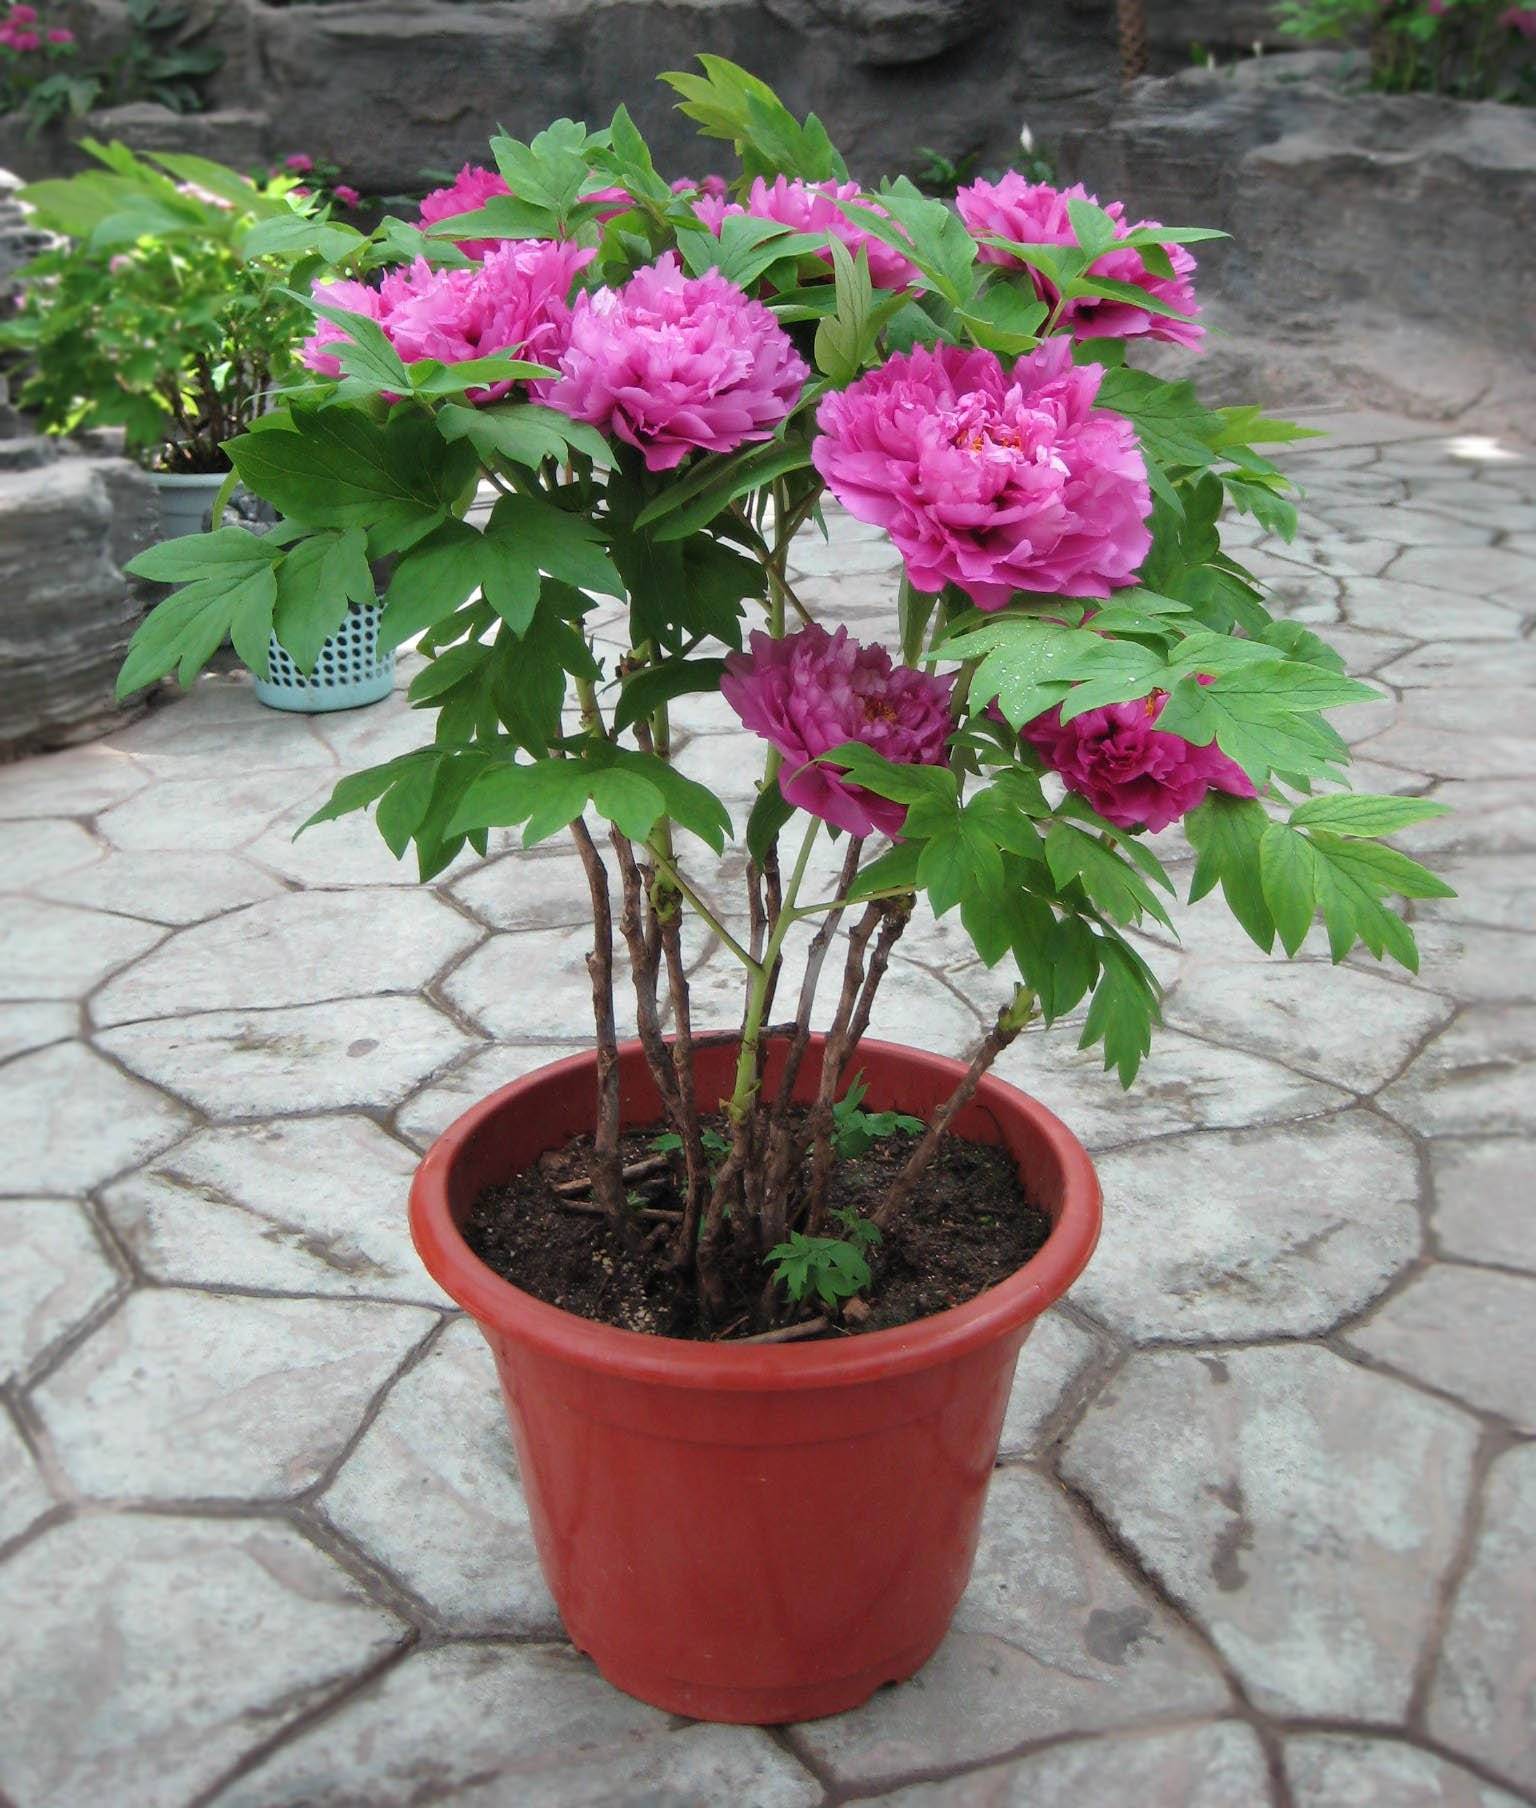 Пионы в горшке: как посадить и вырастить комнатные цветы в домашних условиях, какие трудности могут возникнуть при посадке соцветий дома или на балконе?